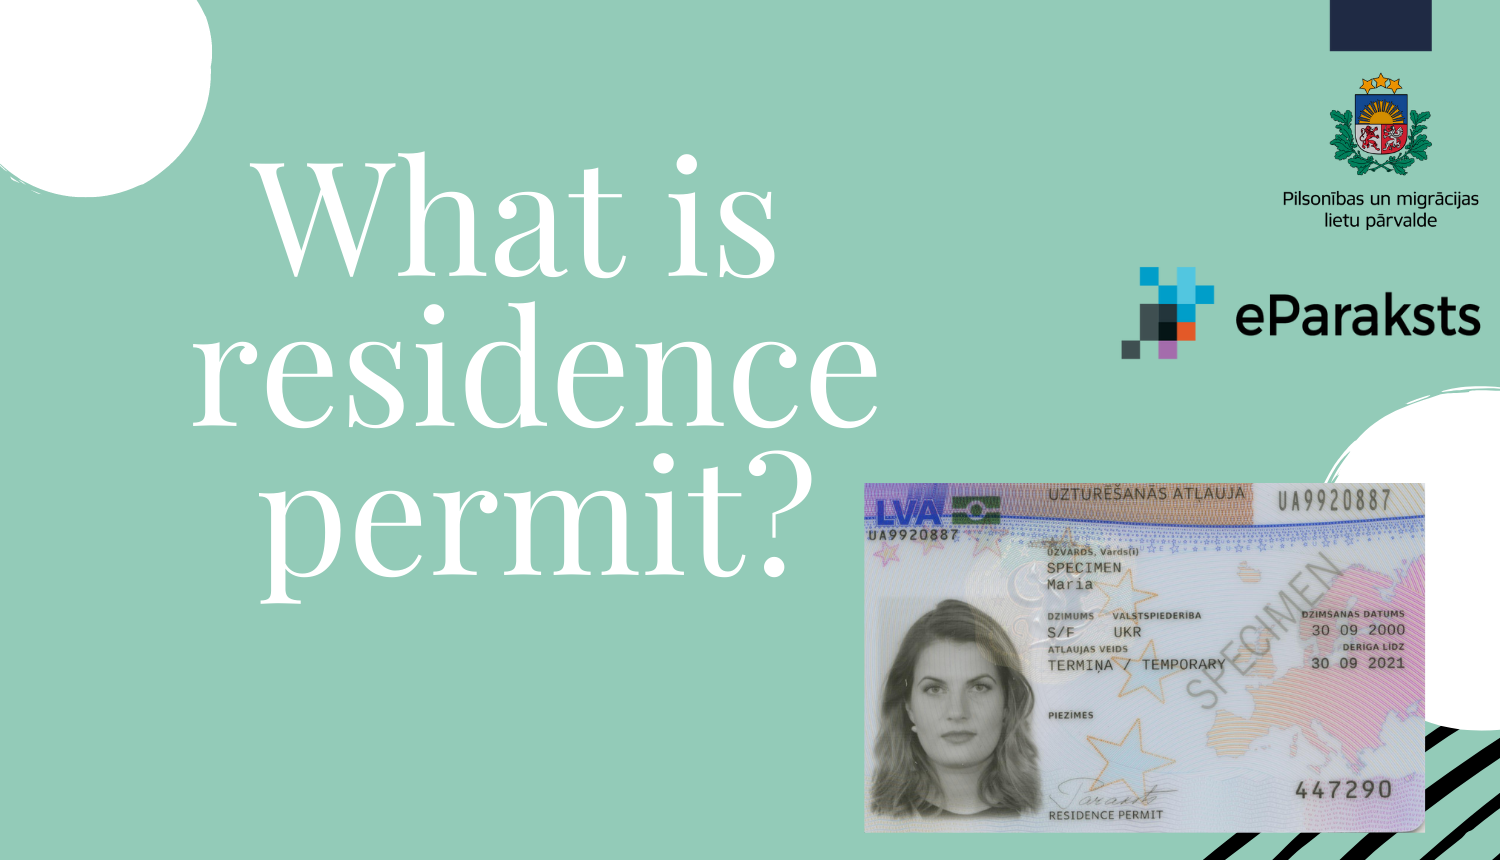 Vizuāls materiāls ar uzturēšanās atļaujas kartes fotogrāfiju un uzrakstu angliski "What is residence permit?"